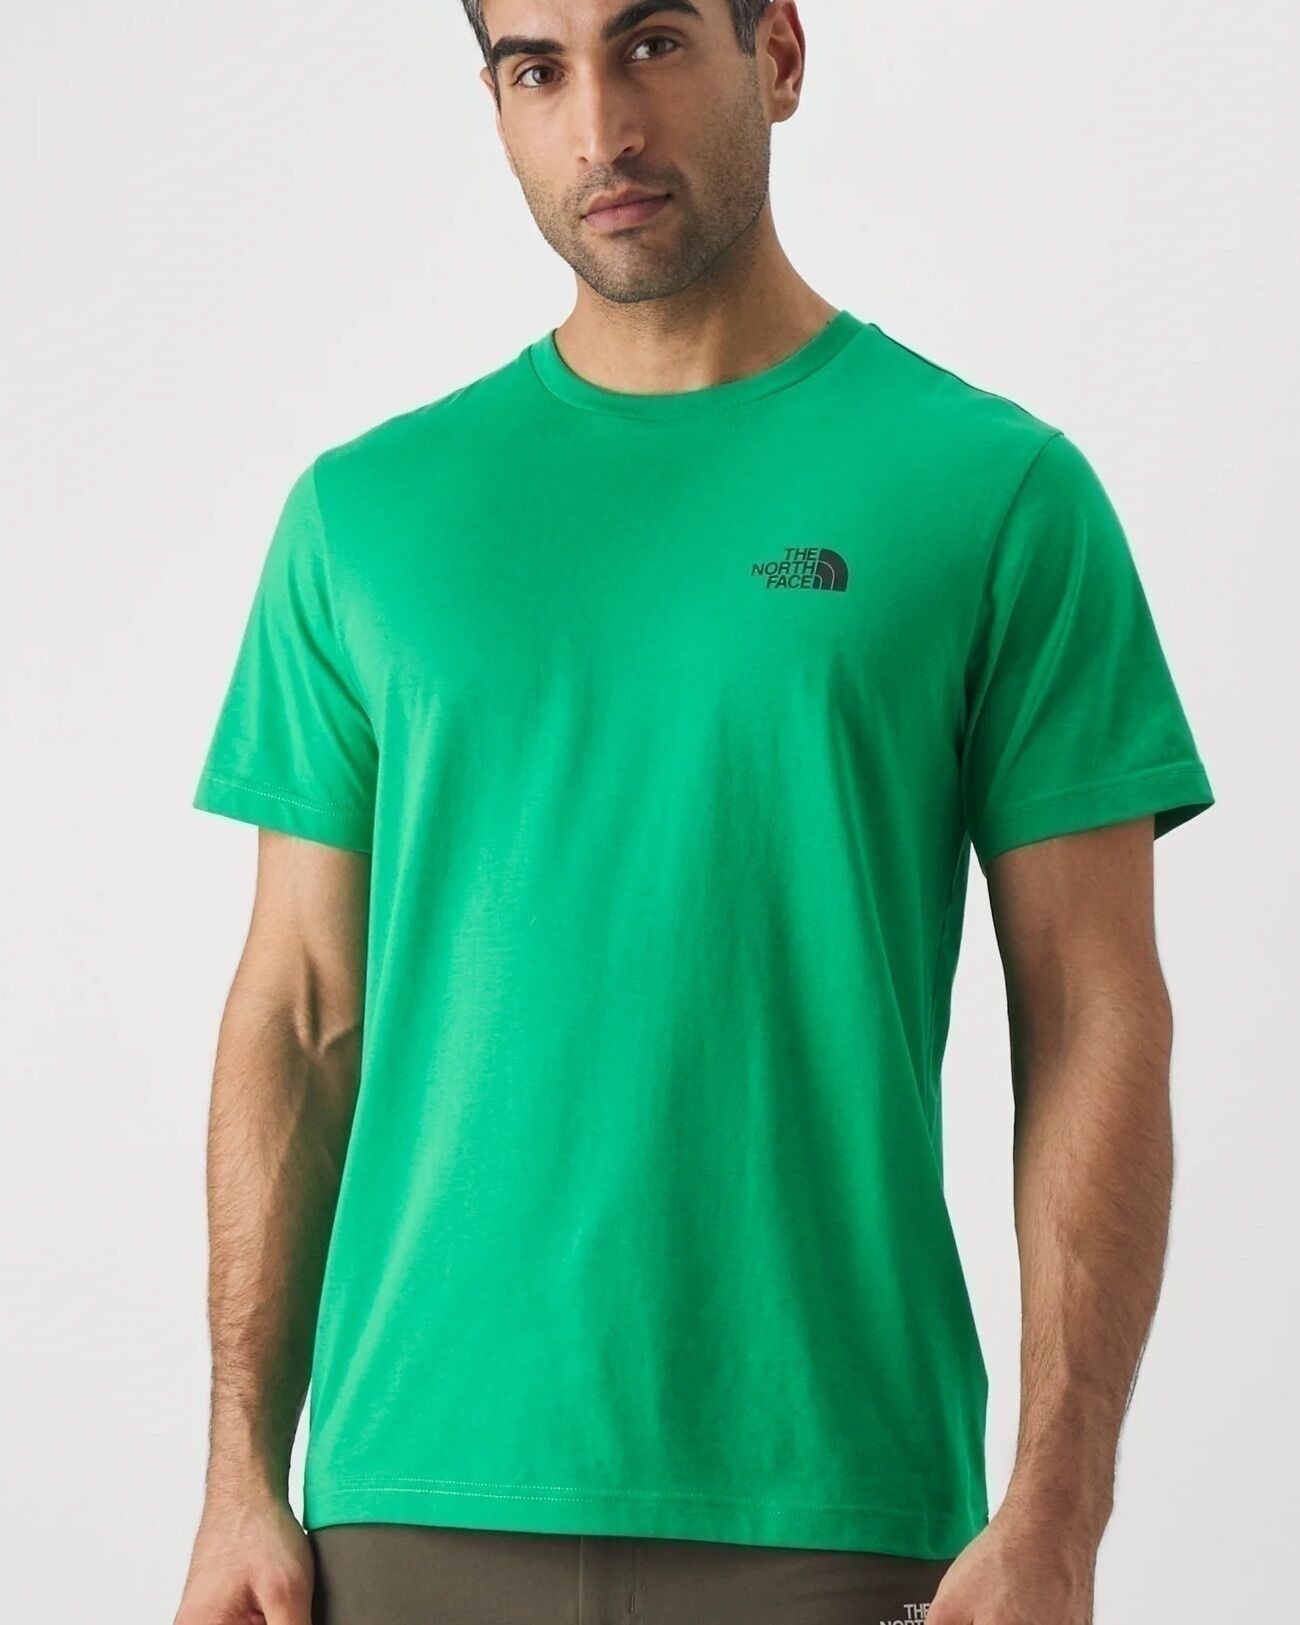 The North Face T-shirt maglia maglietta UOMO Verde Smeraldo Simple Dome